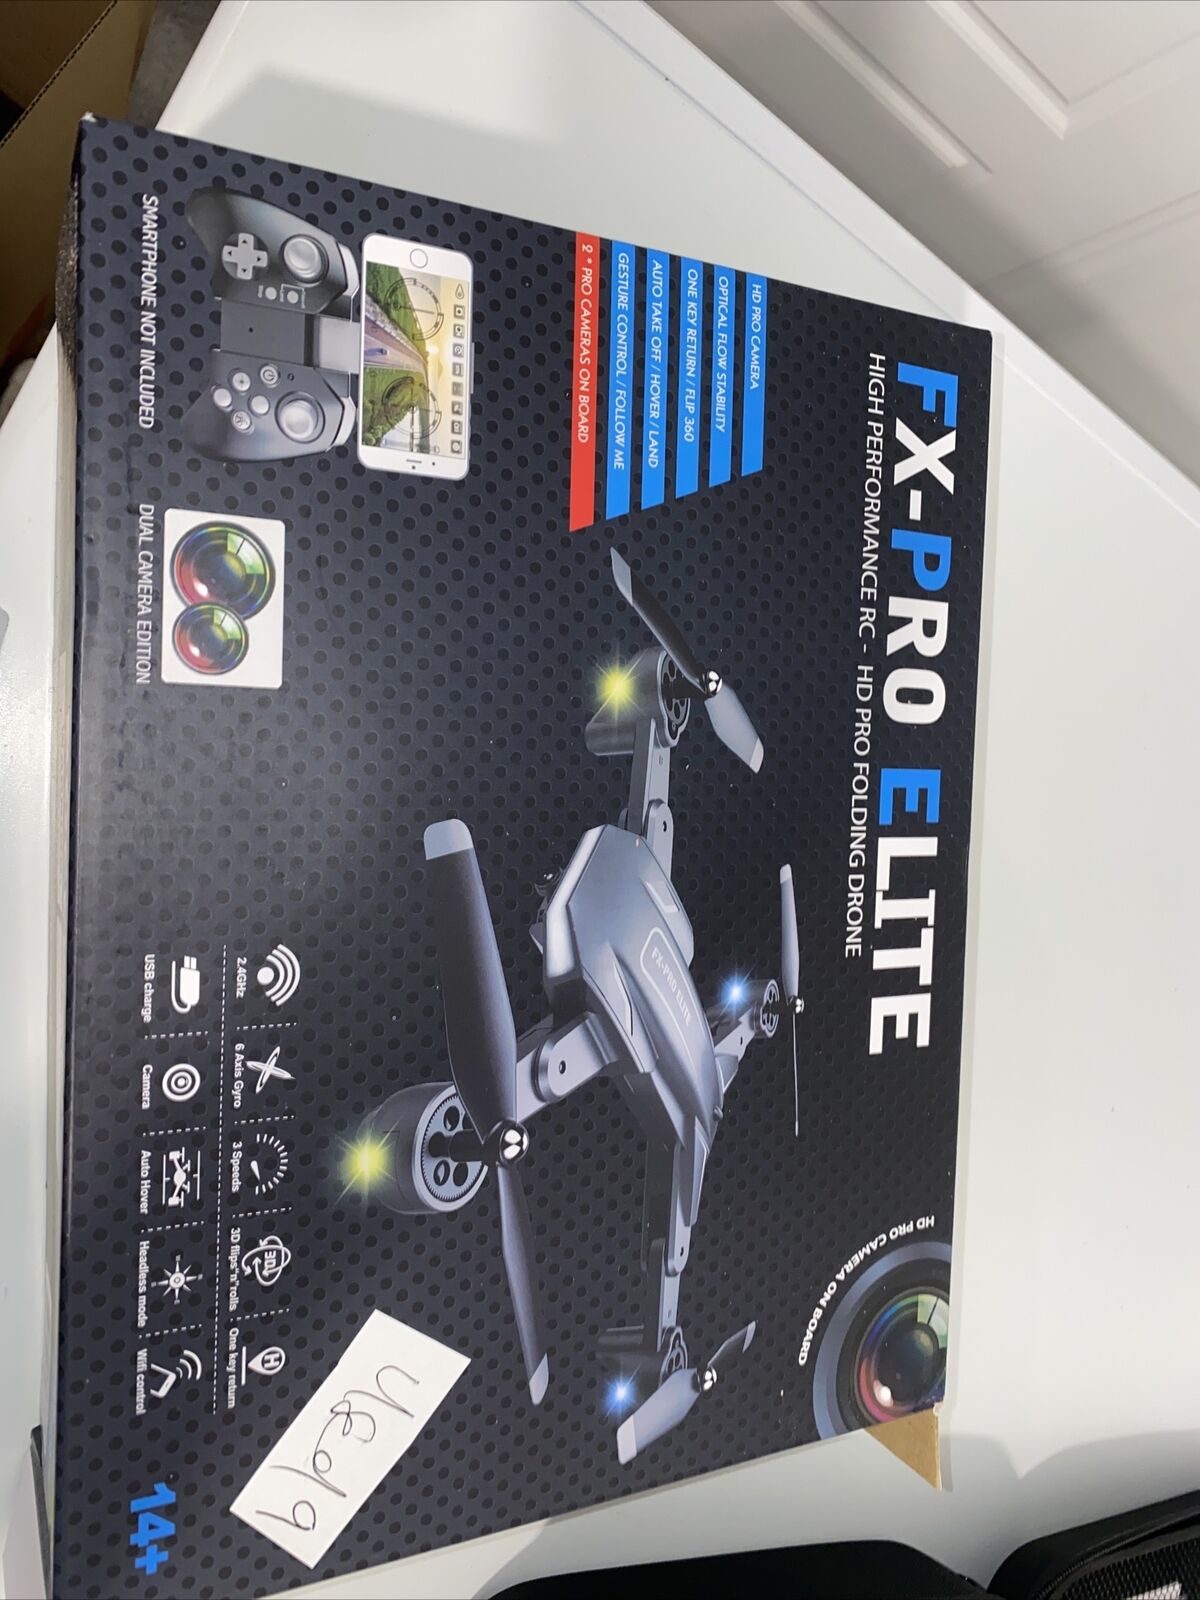 FX-Pro Elite Foldable Drone RRP £199.99